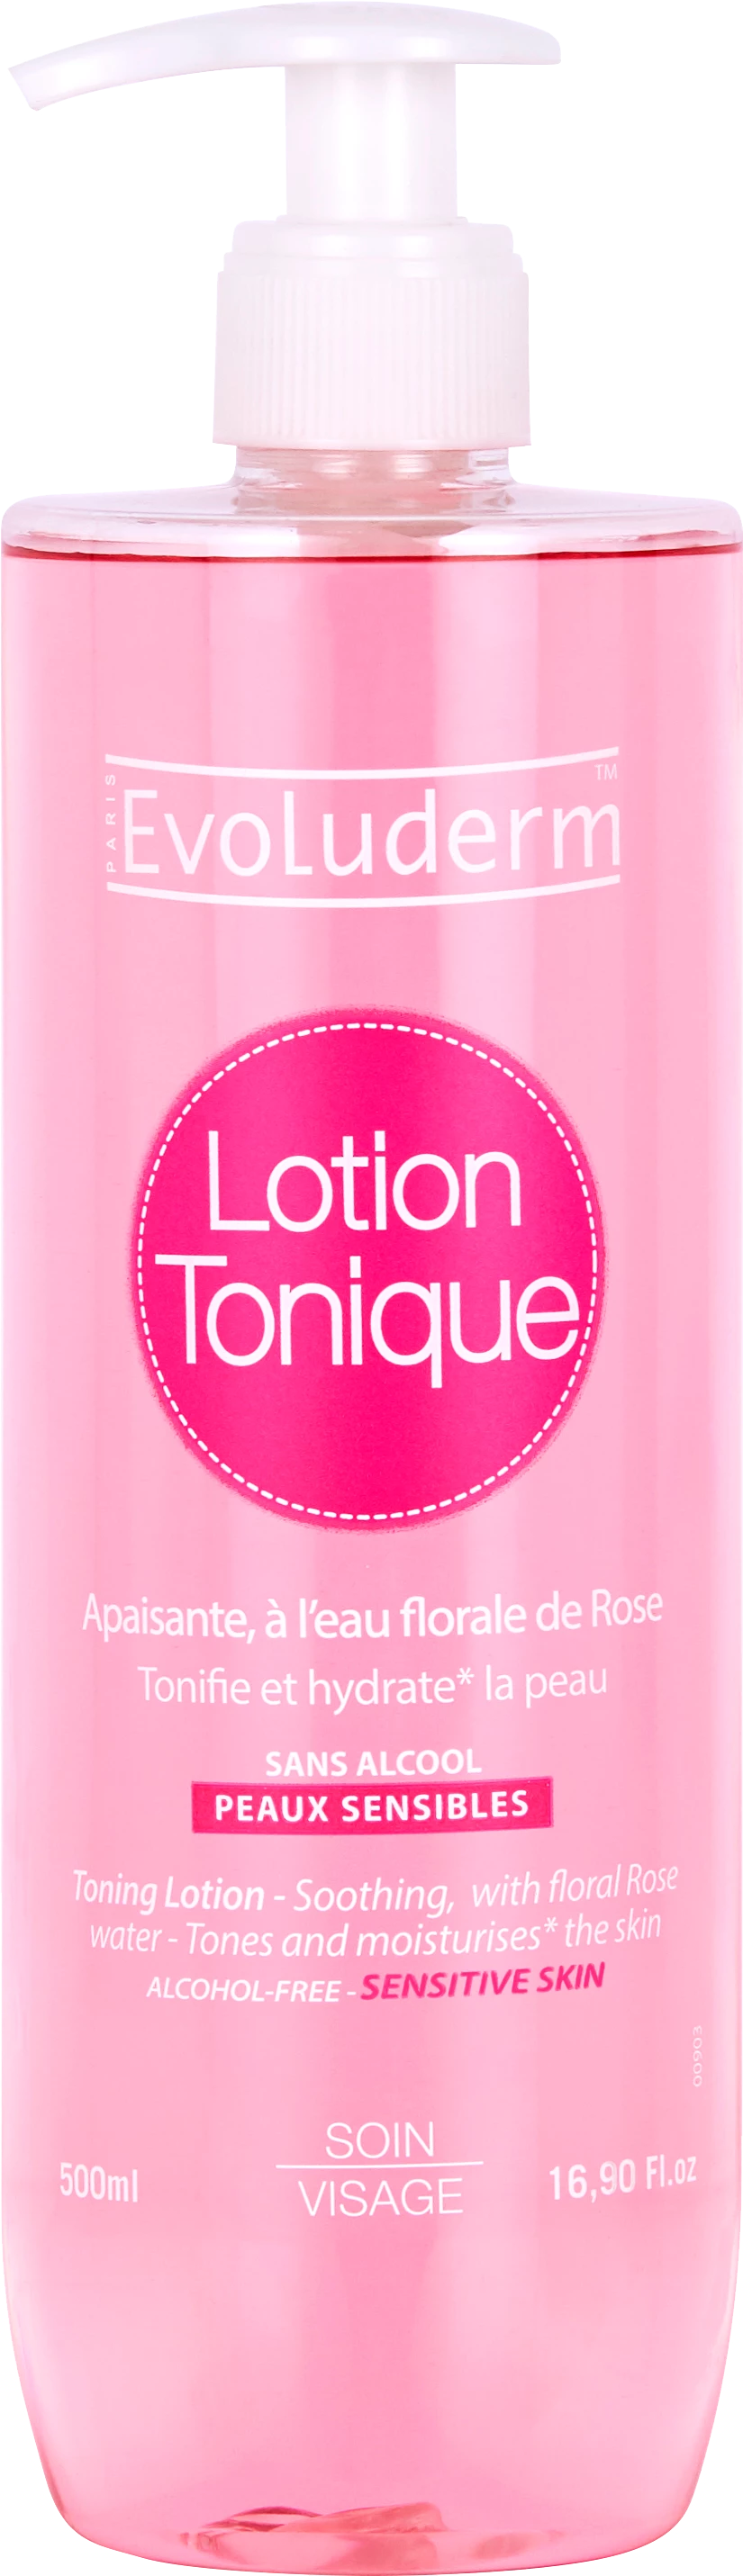 Lotion Tonique Peaux Sensibles, 500ml - EVOLUDERM